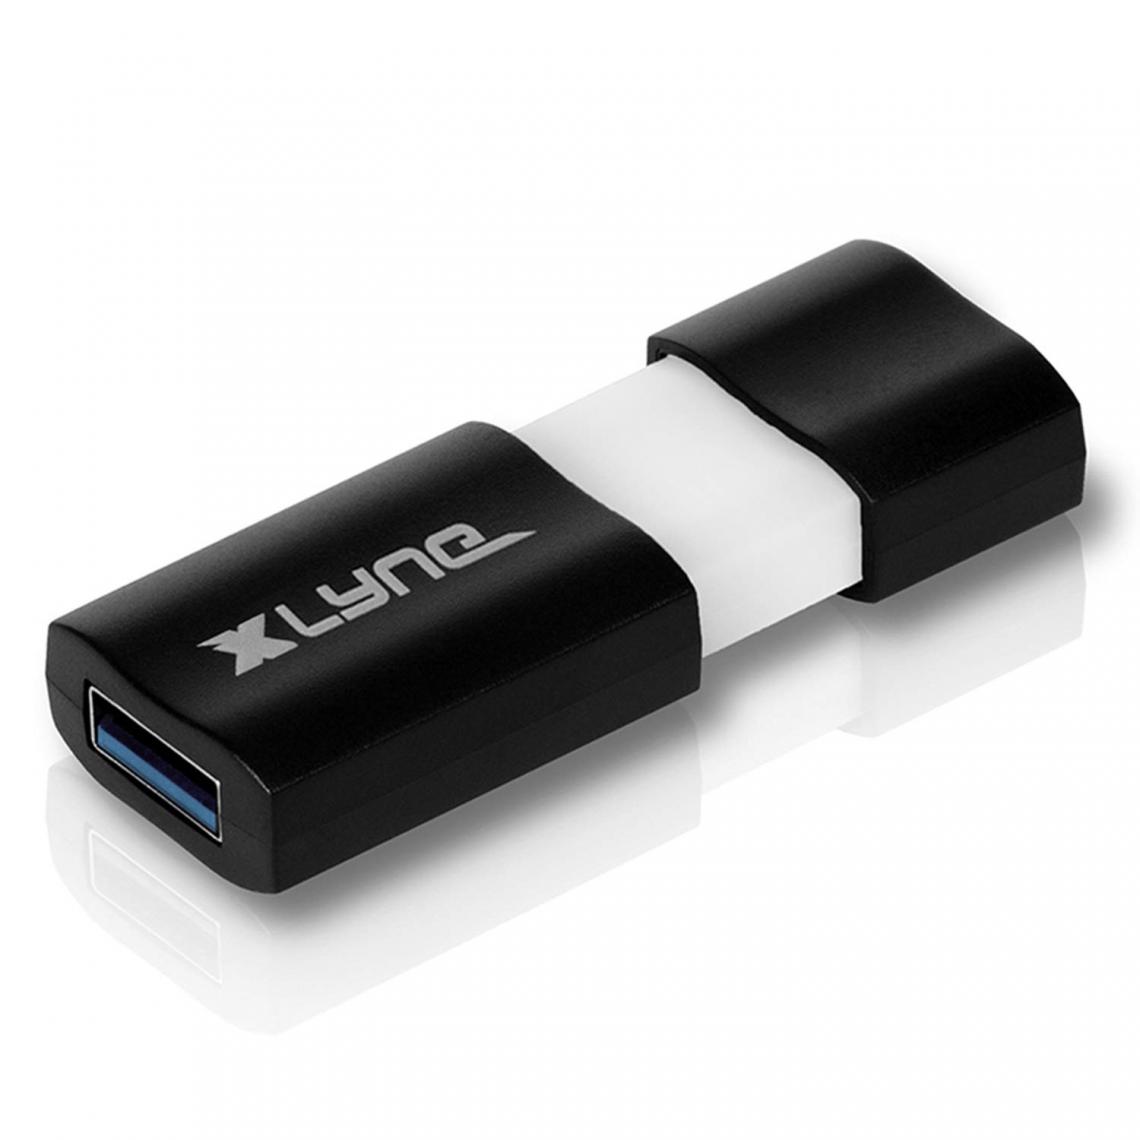 Inconnu - Clé USB 512 Go Xlyne 7951200 noir/blanc USB 3.0 1 pc(s) - Disque Dur interne